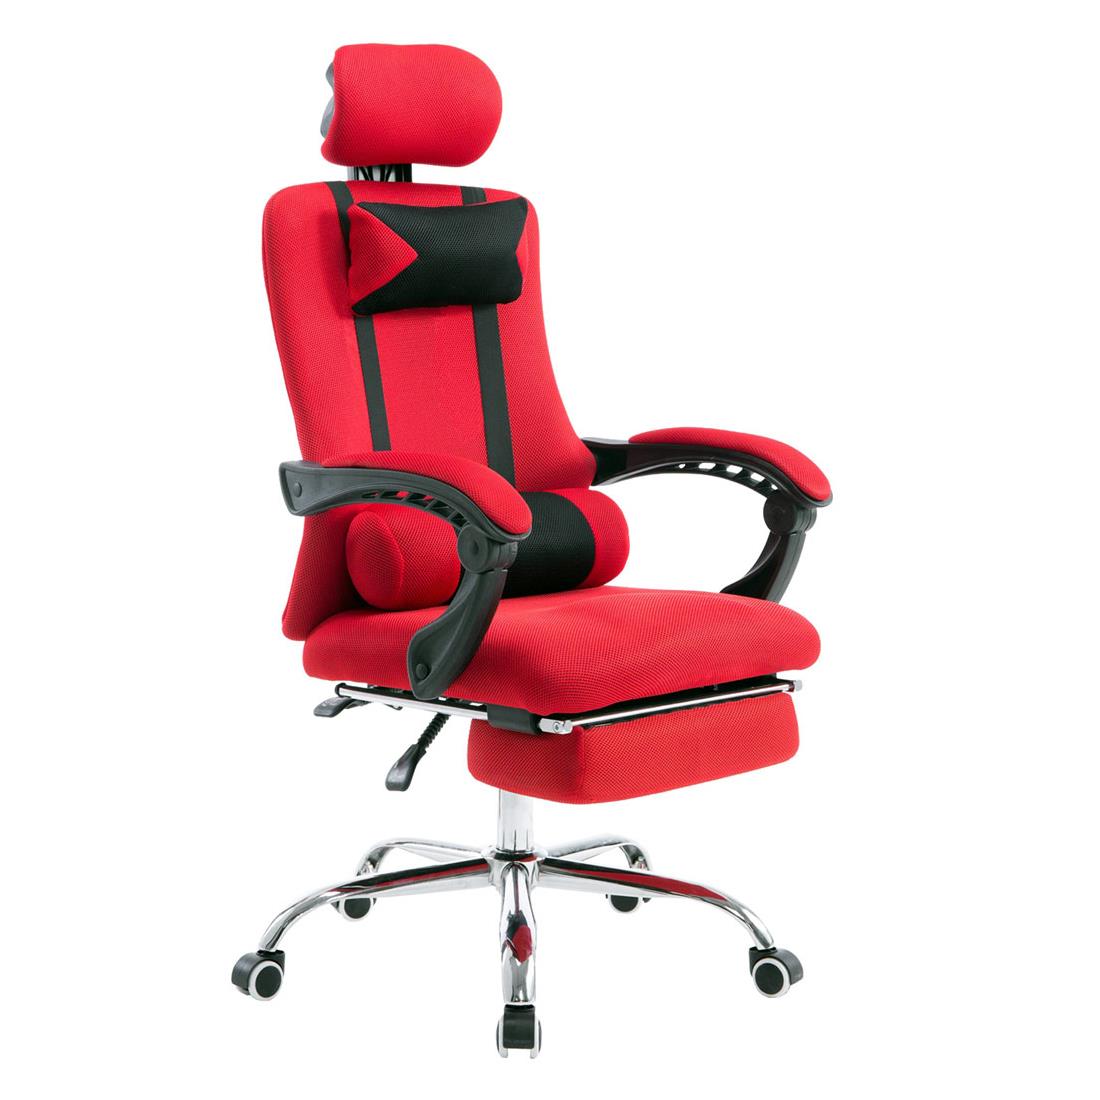 Gaming-Stuhl ANTARES, ausziehbare Fußablage, atmungsaktiver Netzbezug, Farbe Rot